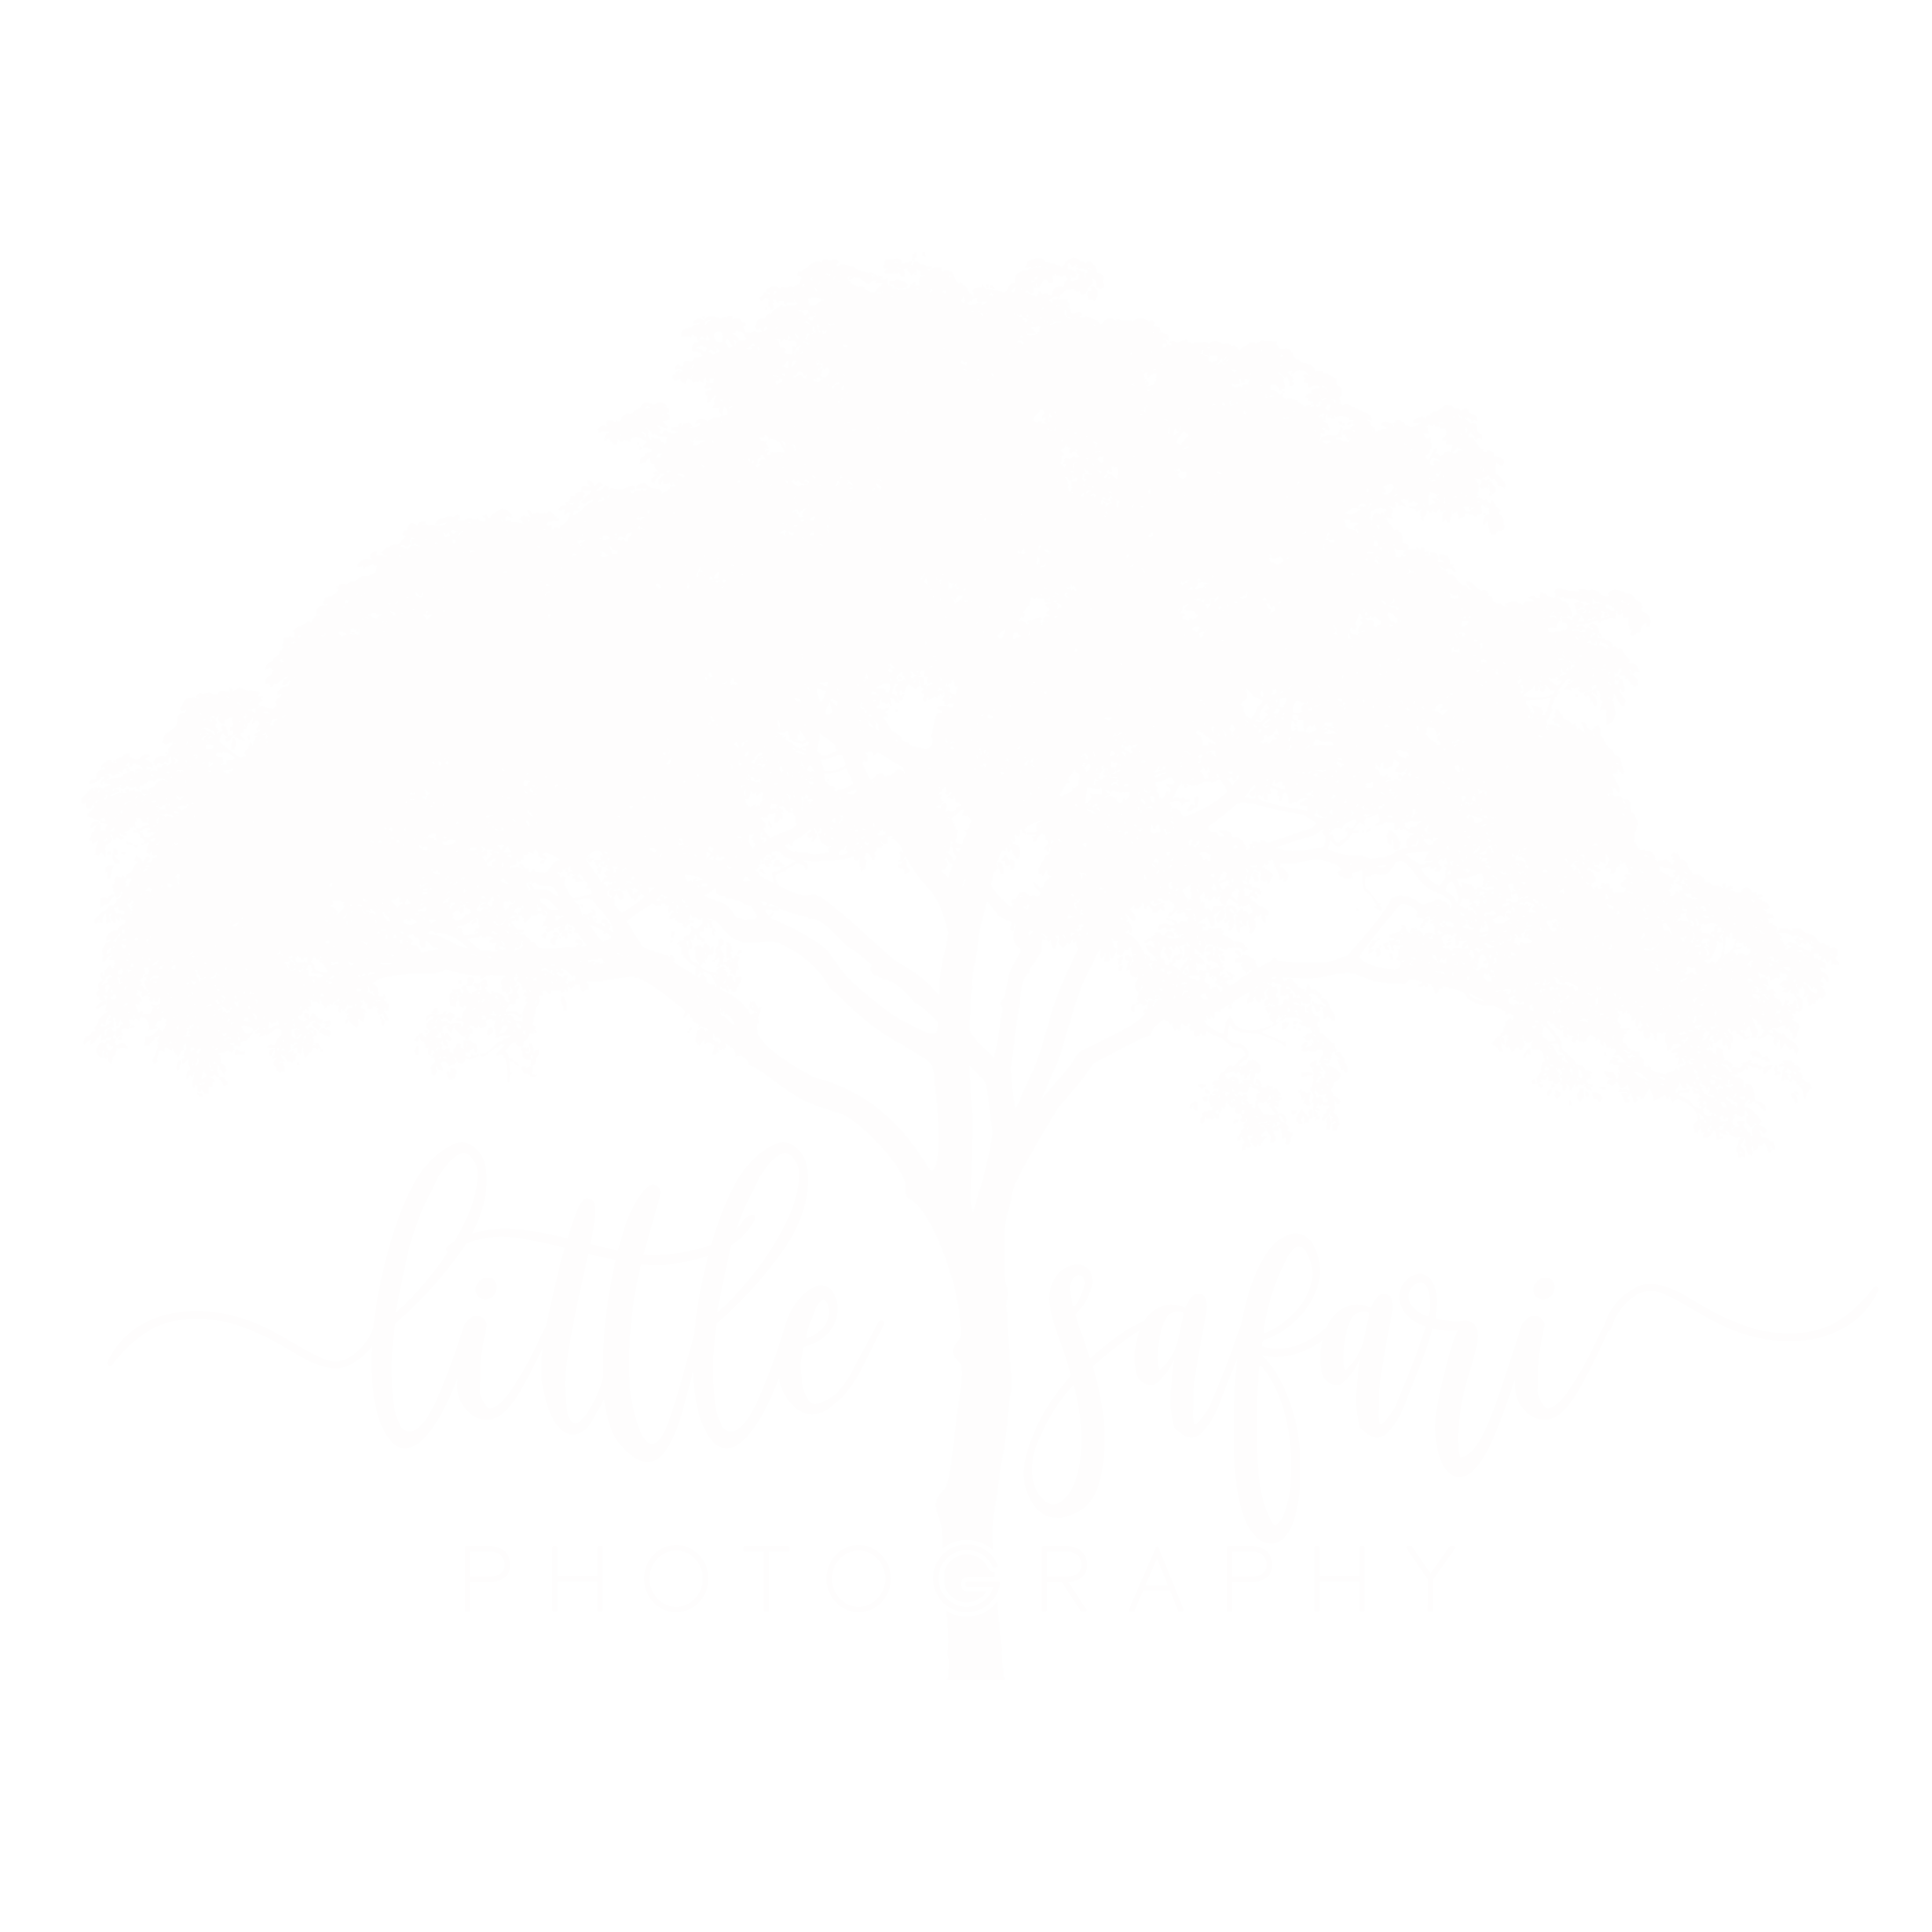 Little Safari Photography